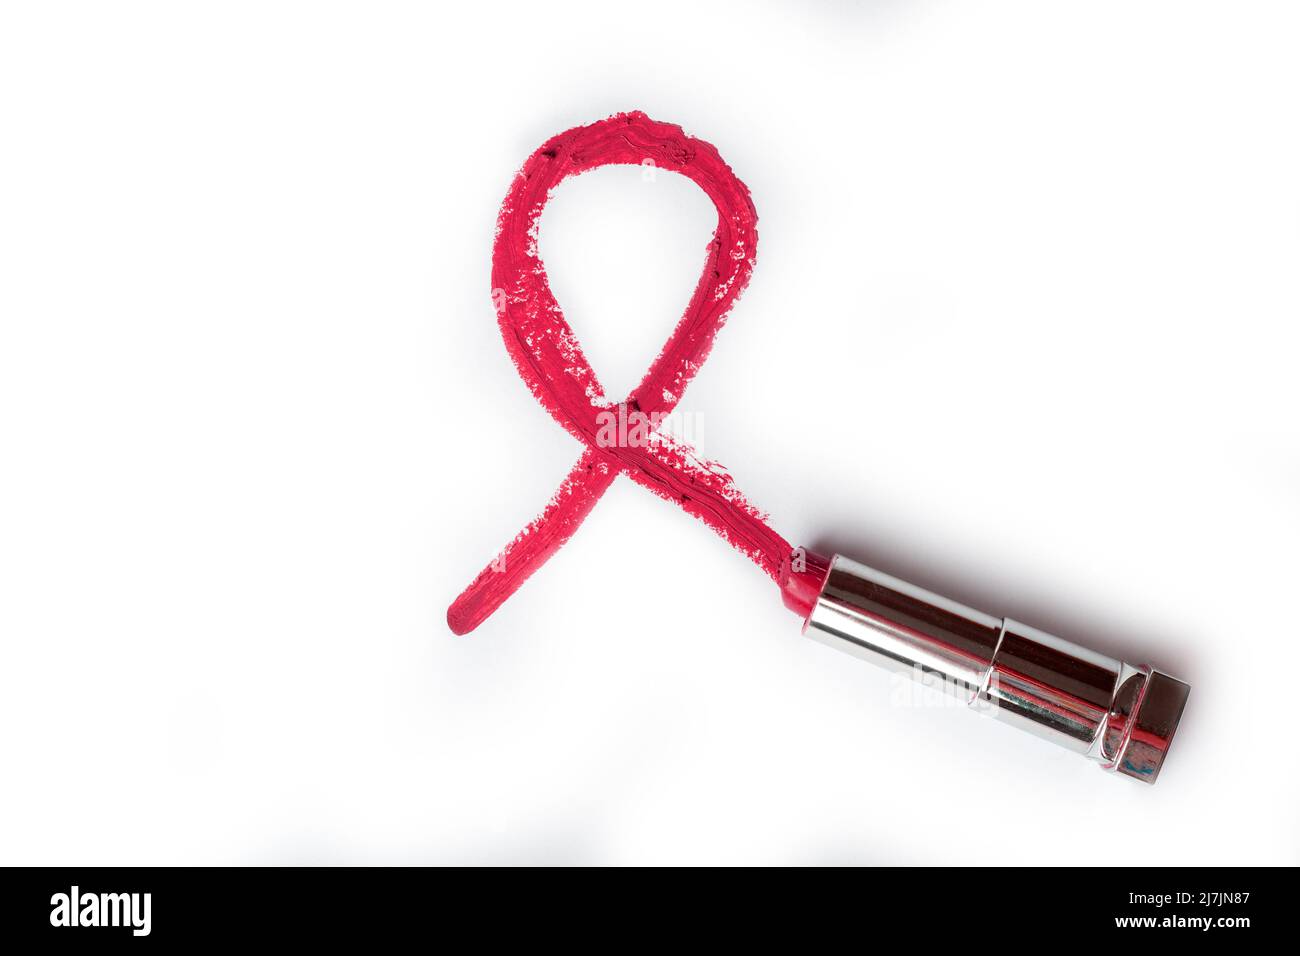 Rossetto rosso come simbolo di solidarietà per le persone che vivono con HIV o AIDS su sfondo bianco. Concetto di Giornata Mondiale dell'AIDS. Foto Stock